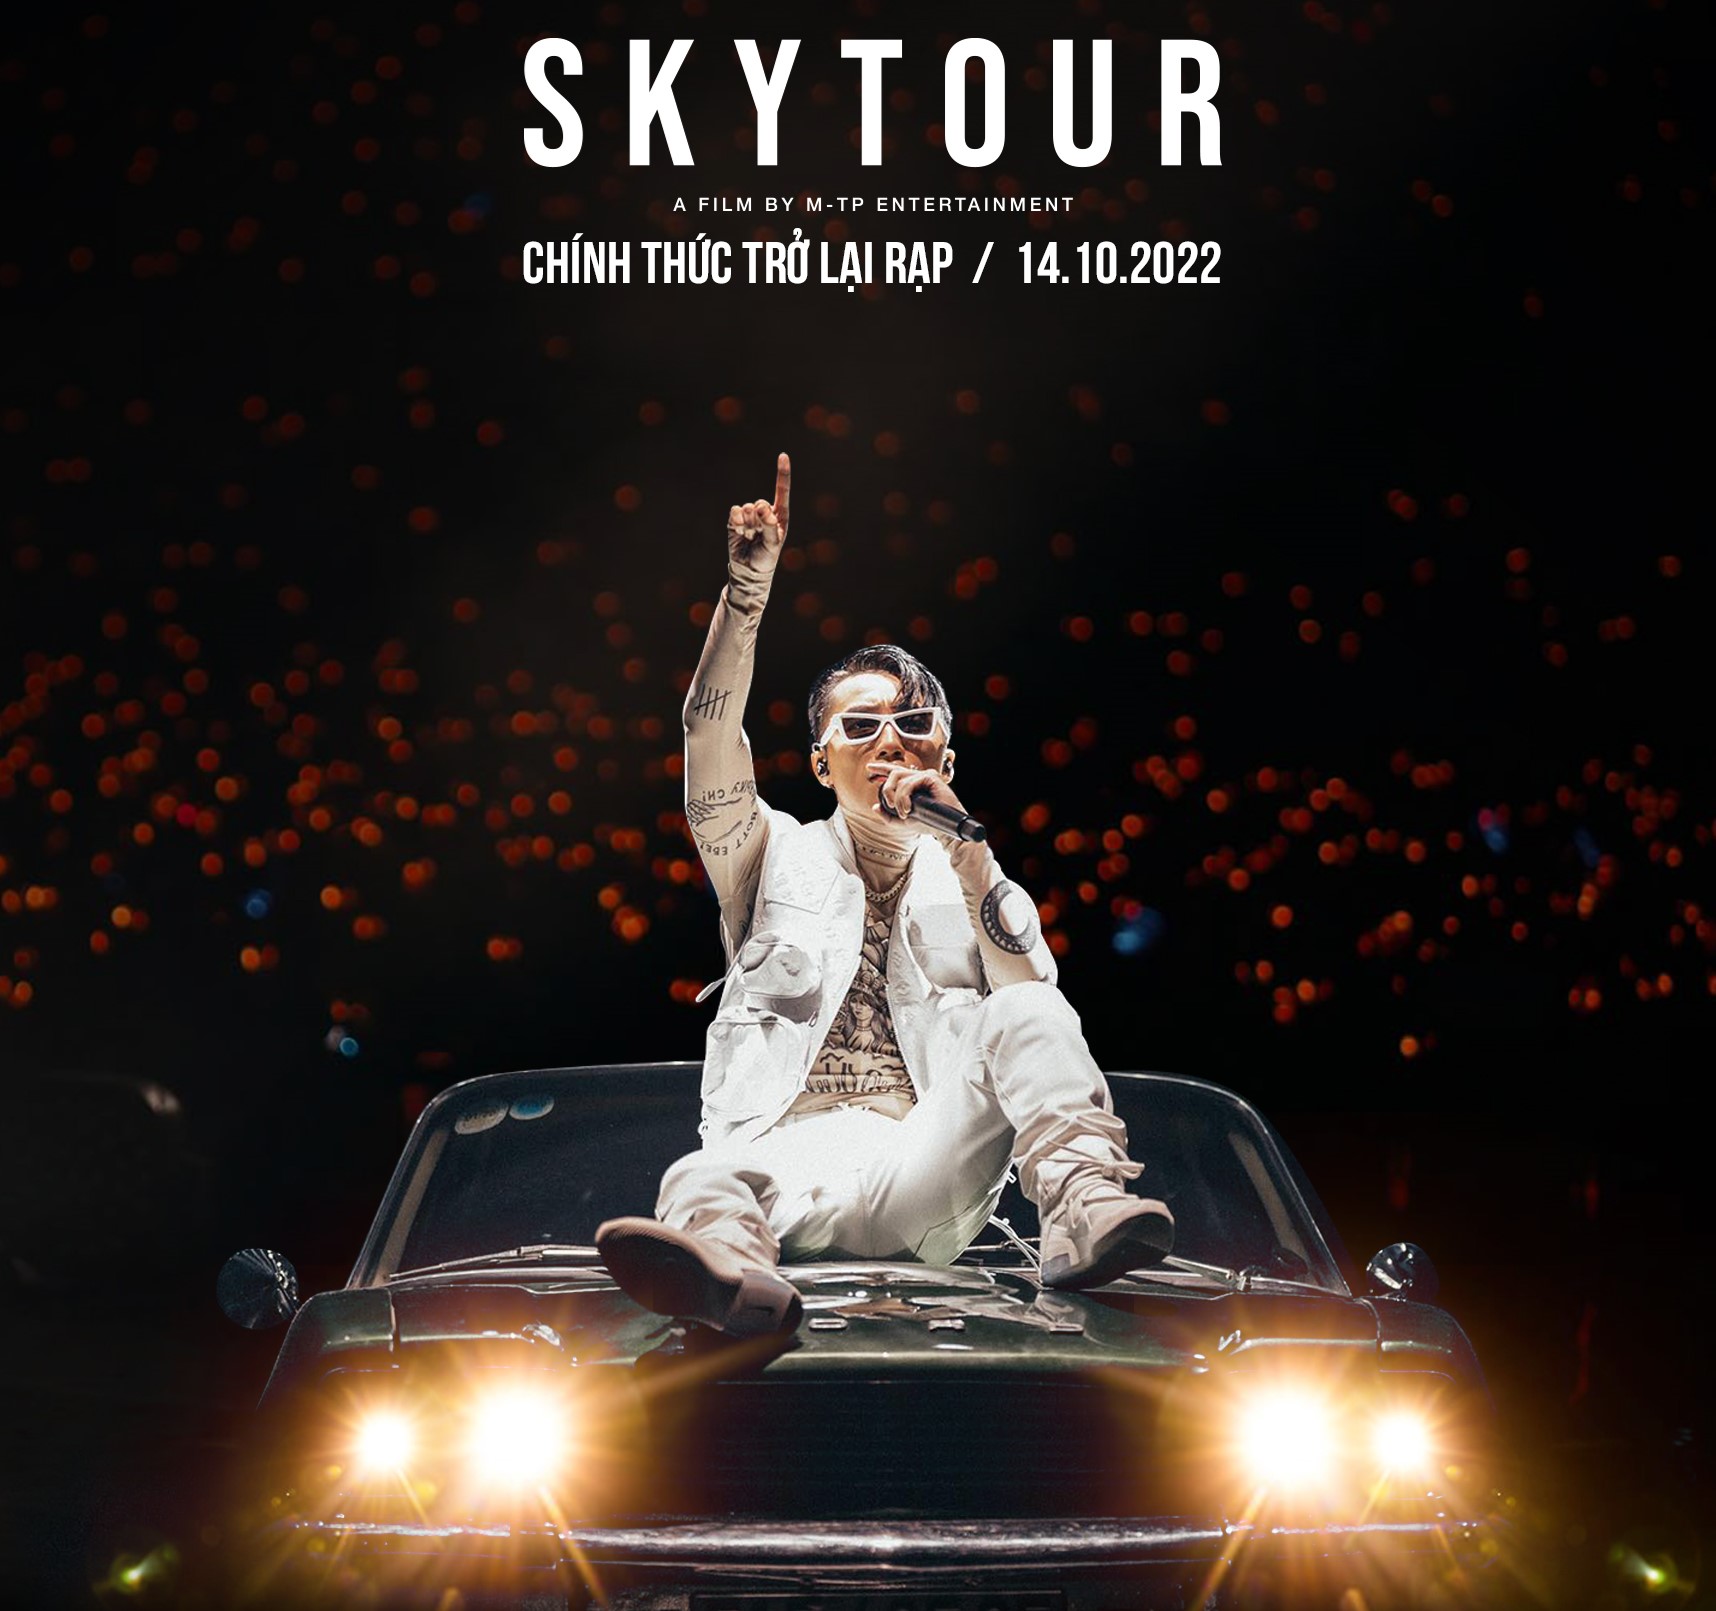 Sơn Tùng M-TP đưa “Sky tour movie” quay trở lại rạp chiếu.